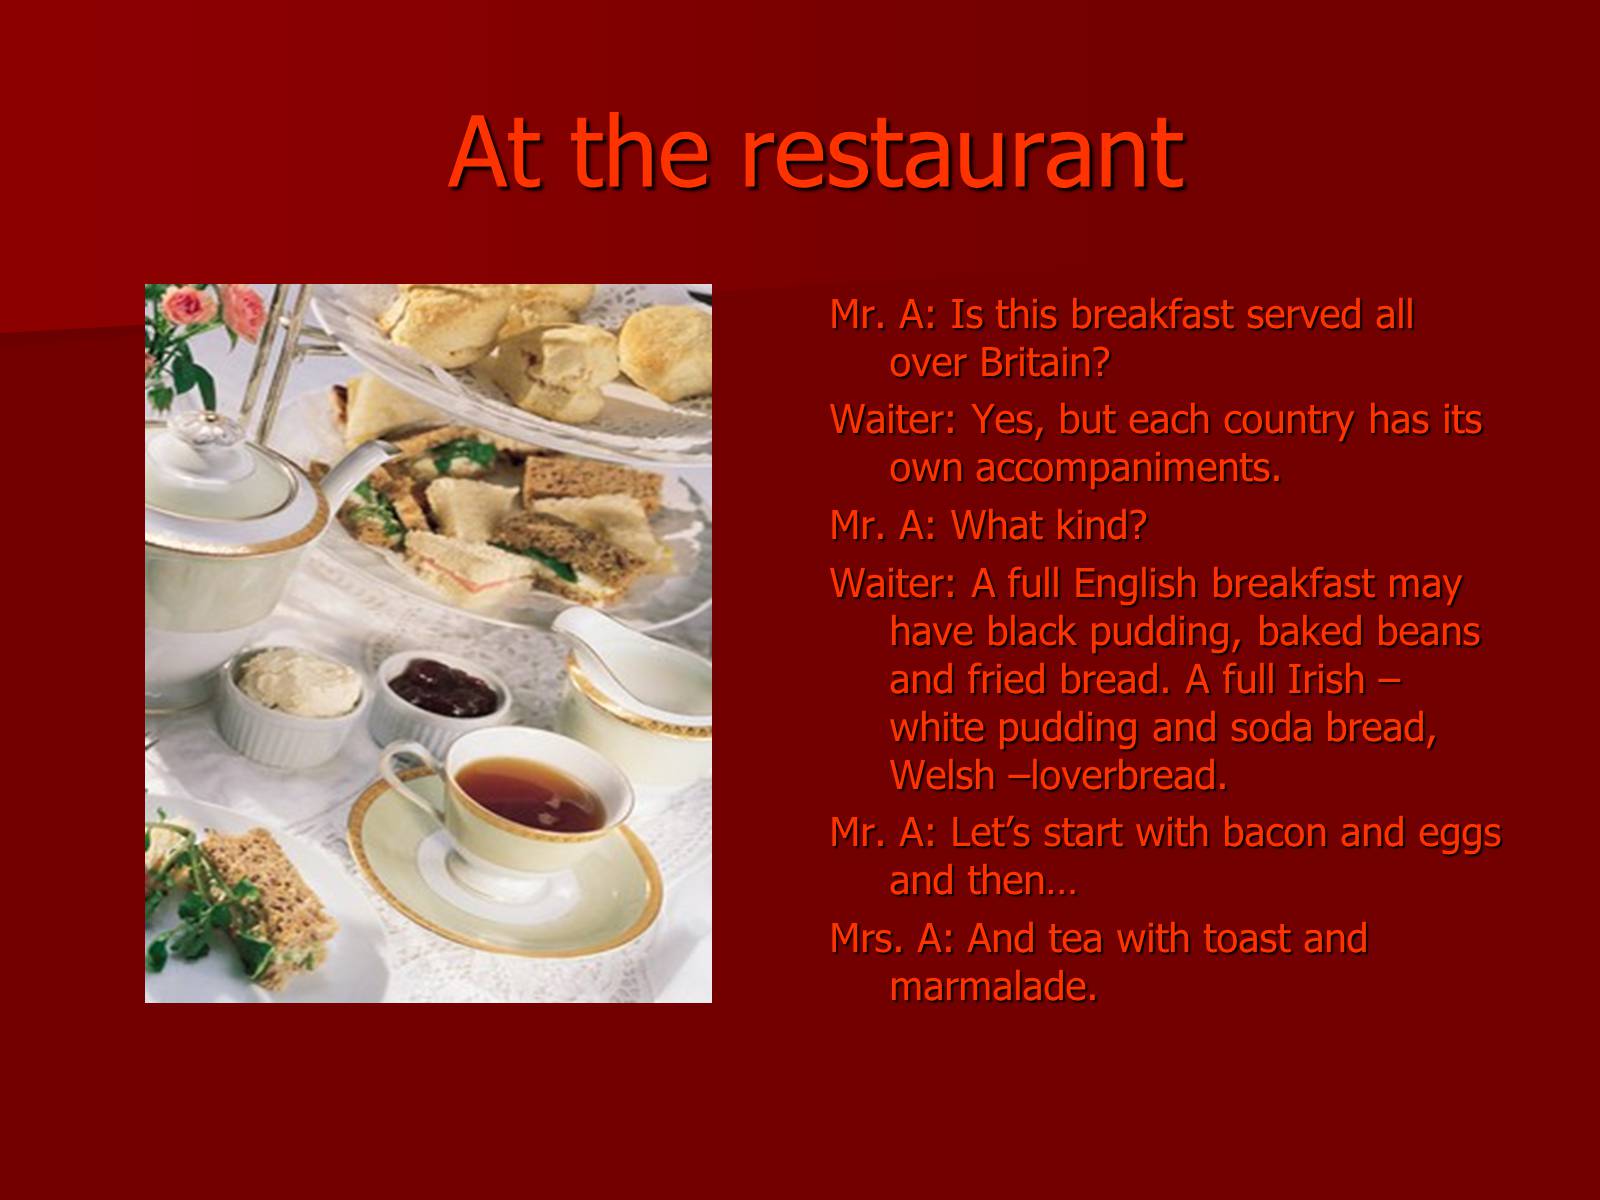 Each country has. Ресторан в Англии для презентации. Презентация еды в ресторане на английском. Тема ресторан на английском языке. Презентация на тему еда на английском.